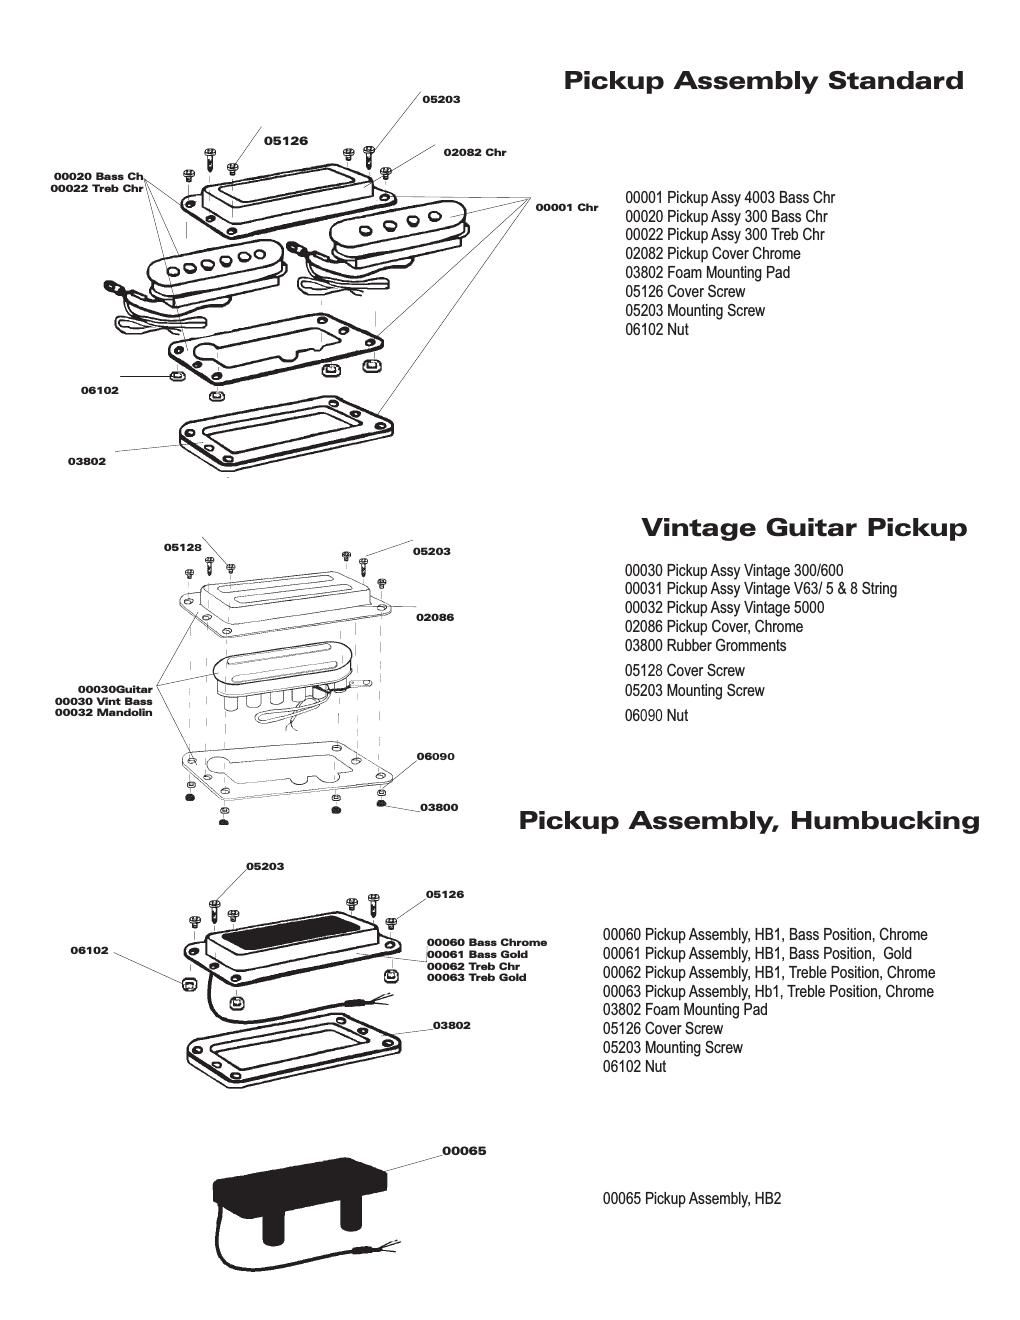 rickenbacker pickup parts